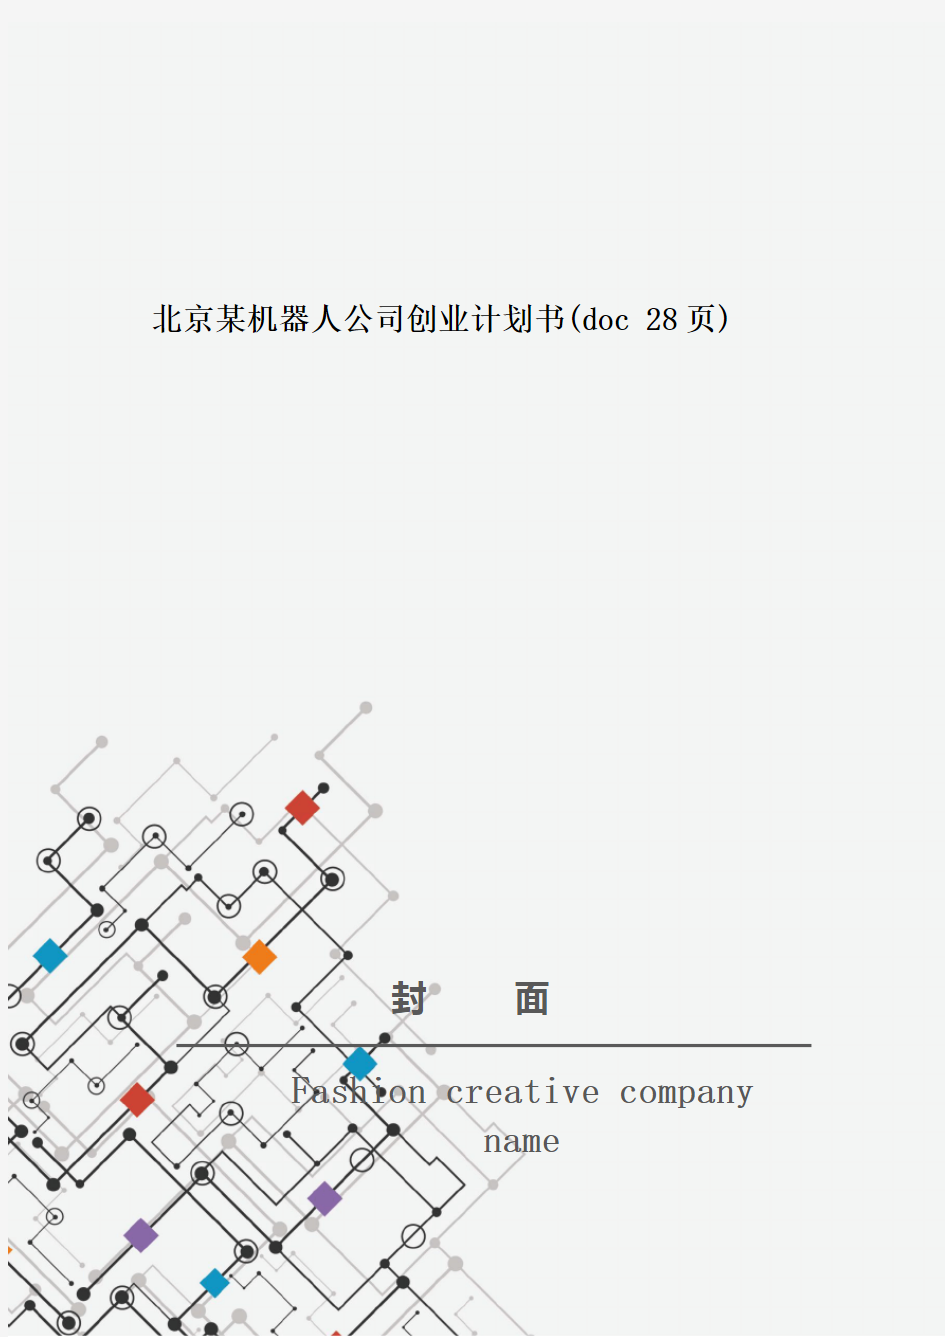 北京某机器人公司创业计划书(doc 28页)_New